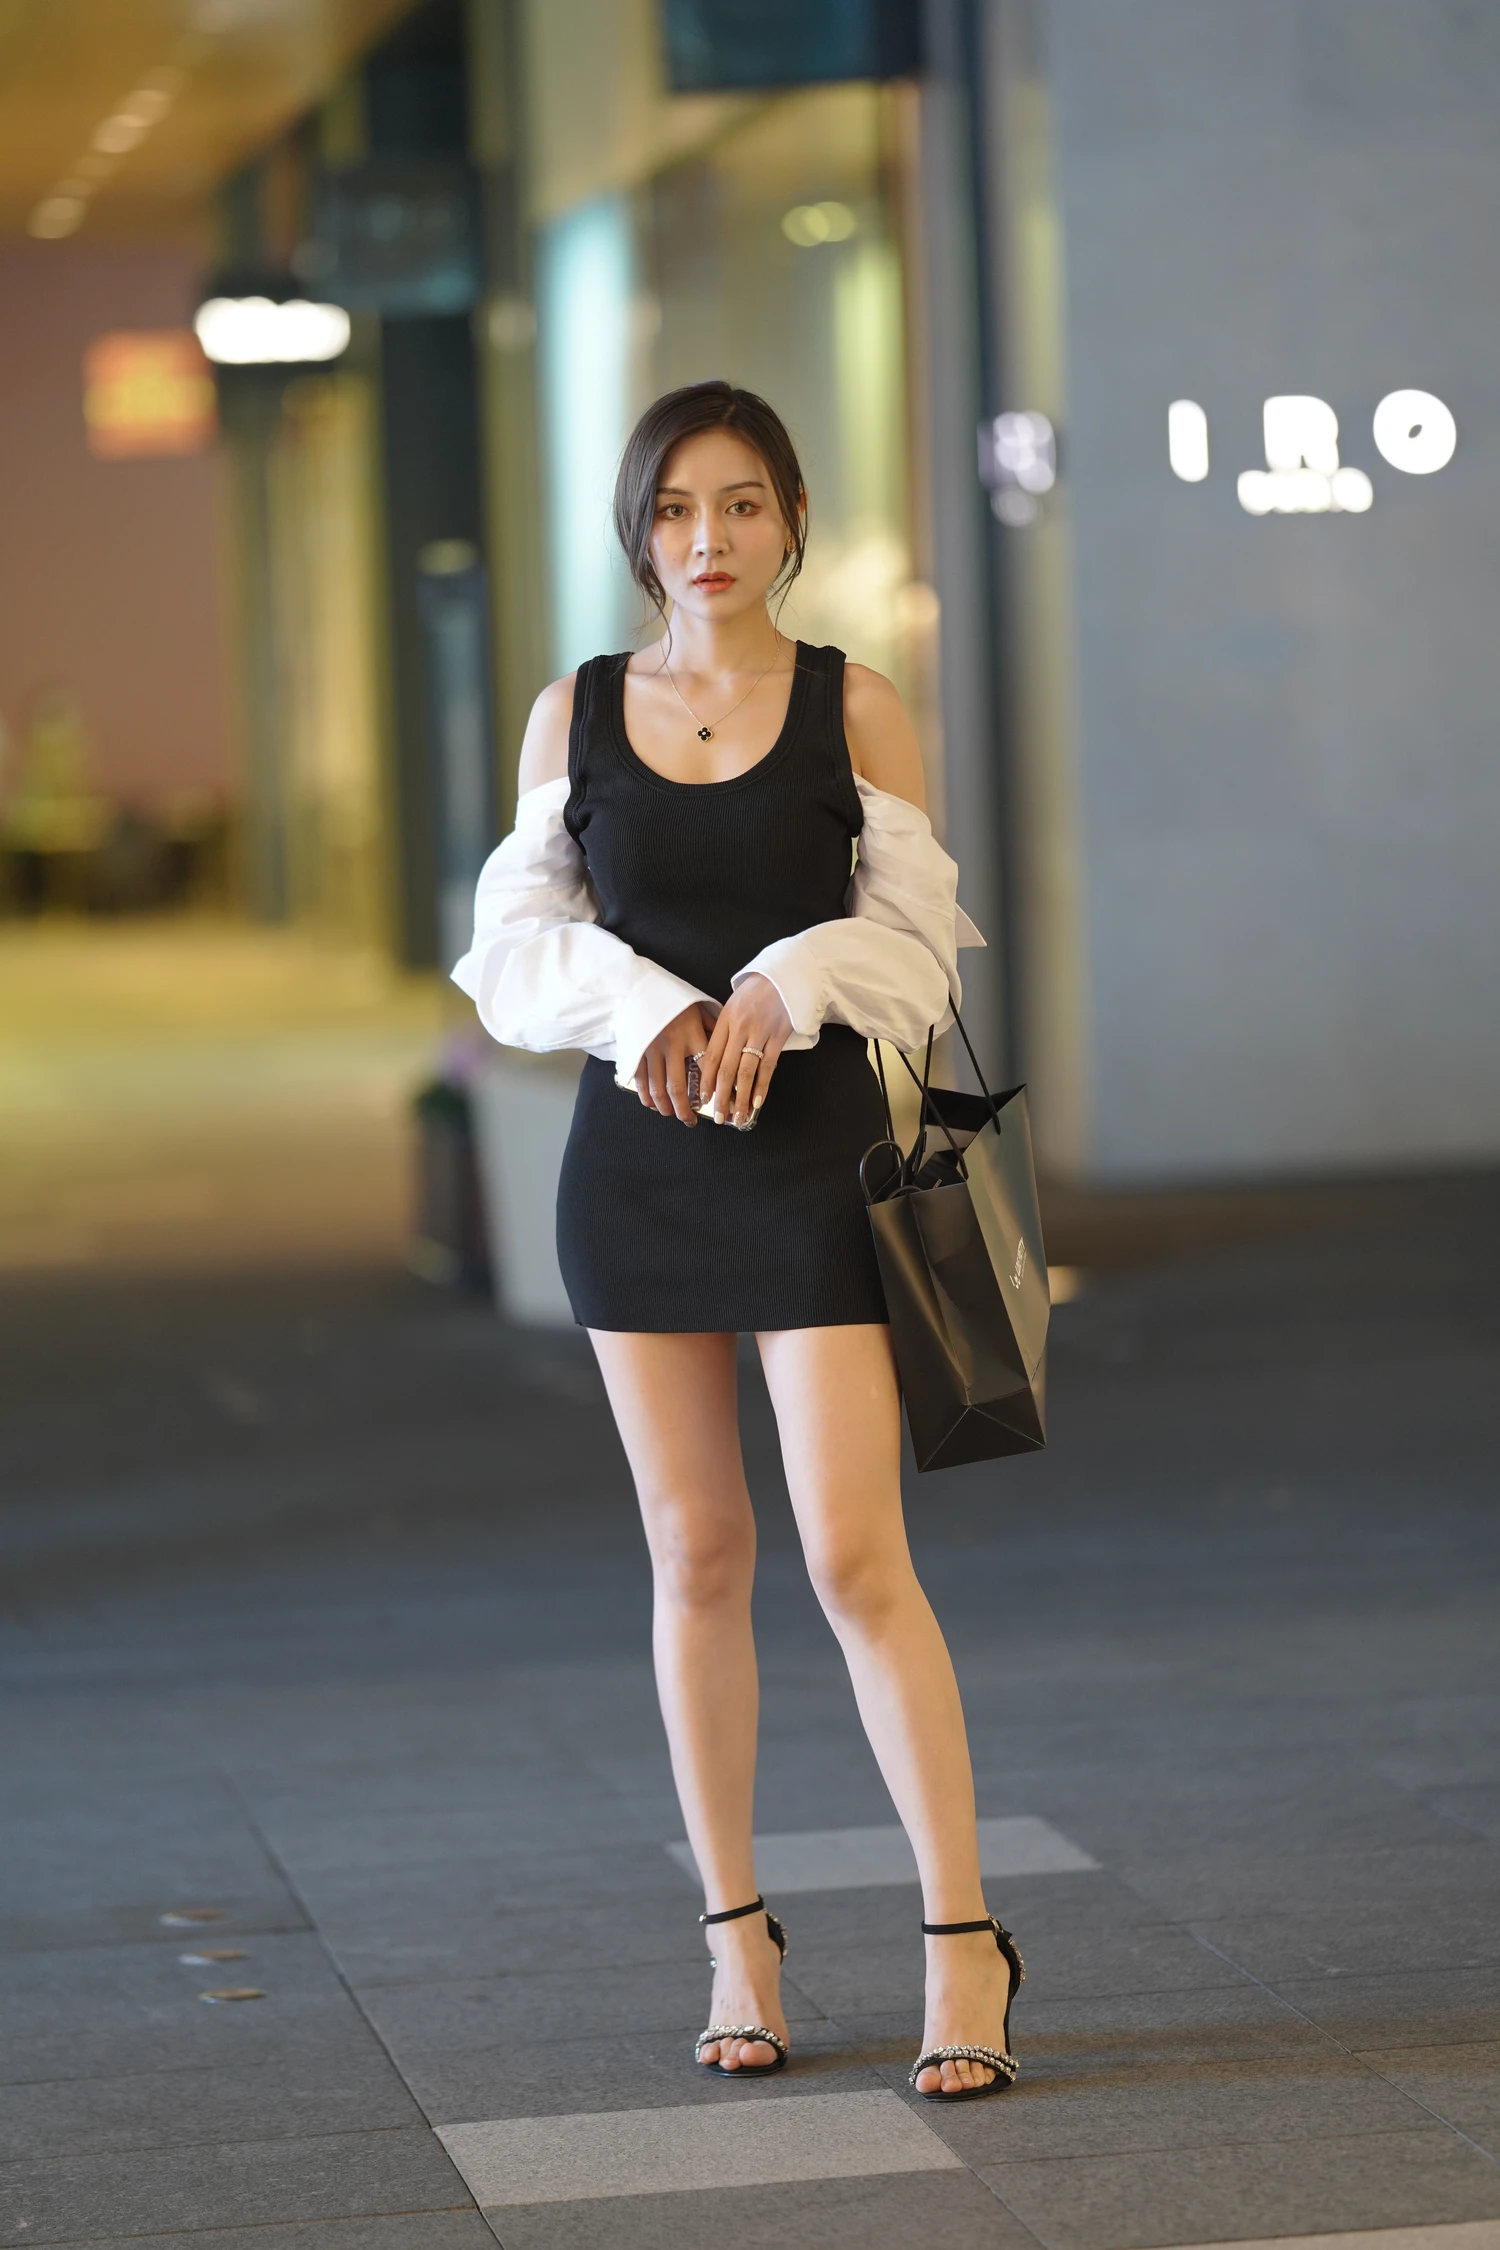 街拍漂亮的黑色连体裙美女 (30)